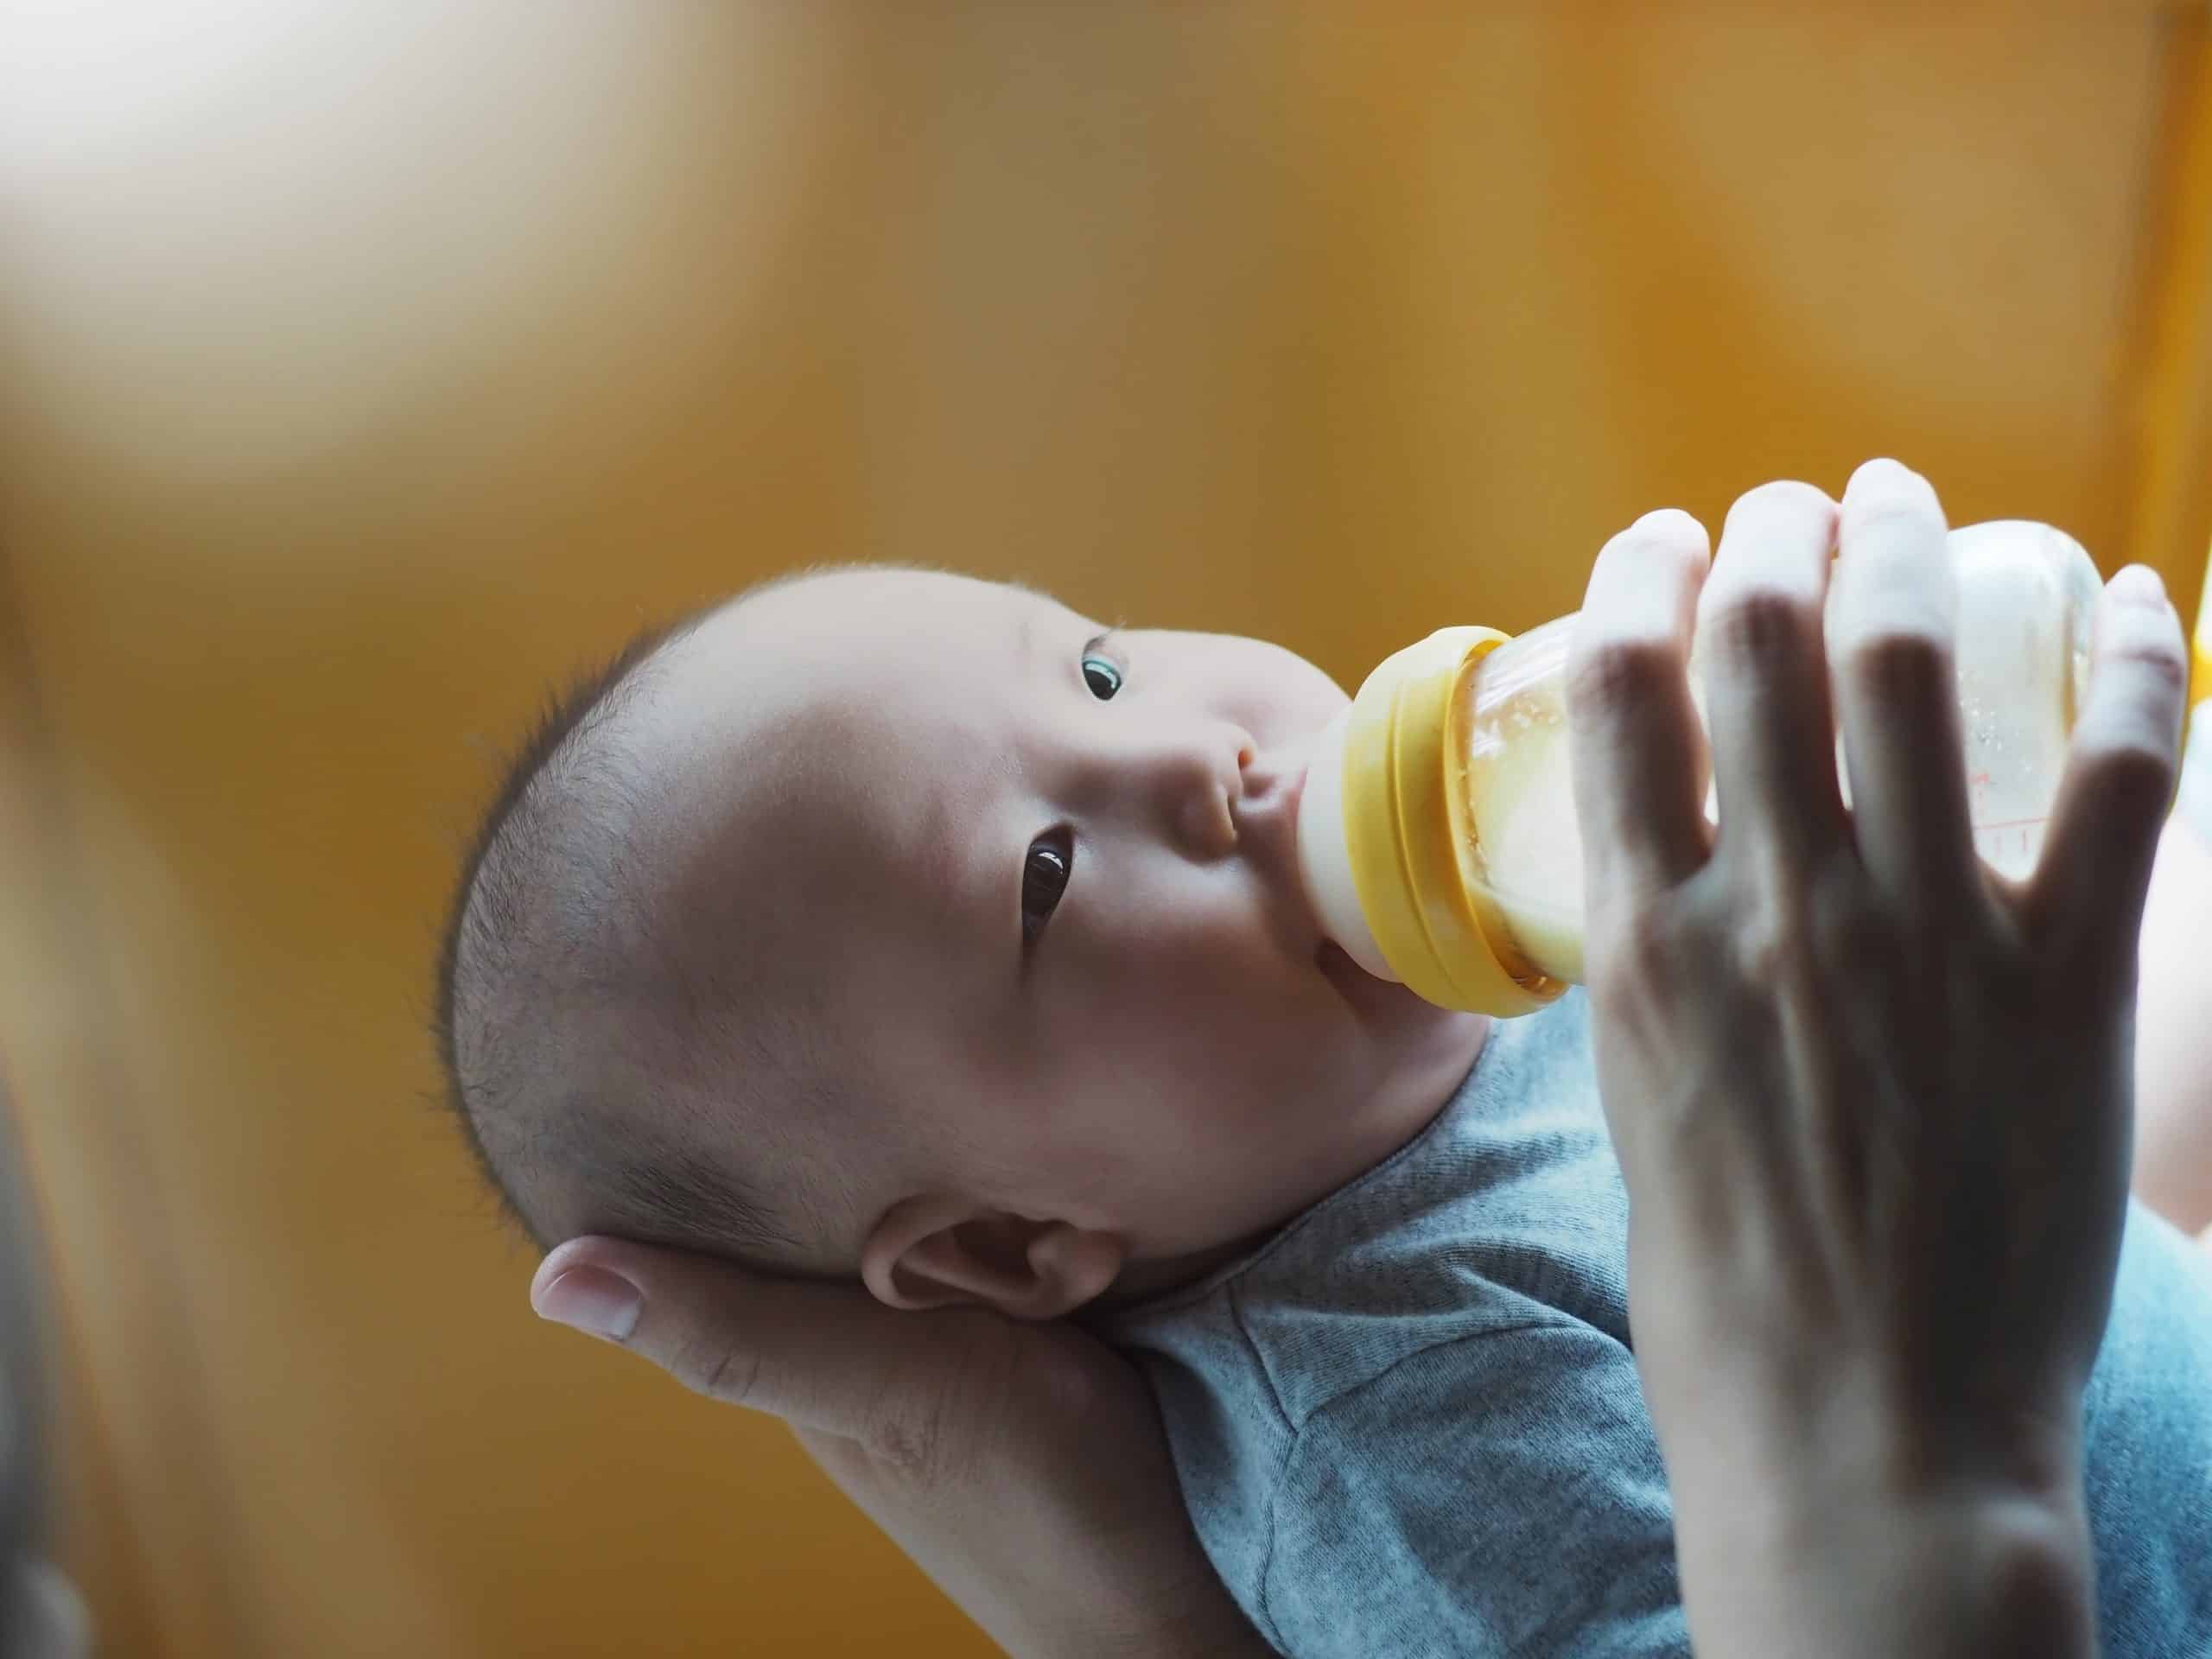 how to sterilise baby bottles